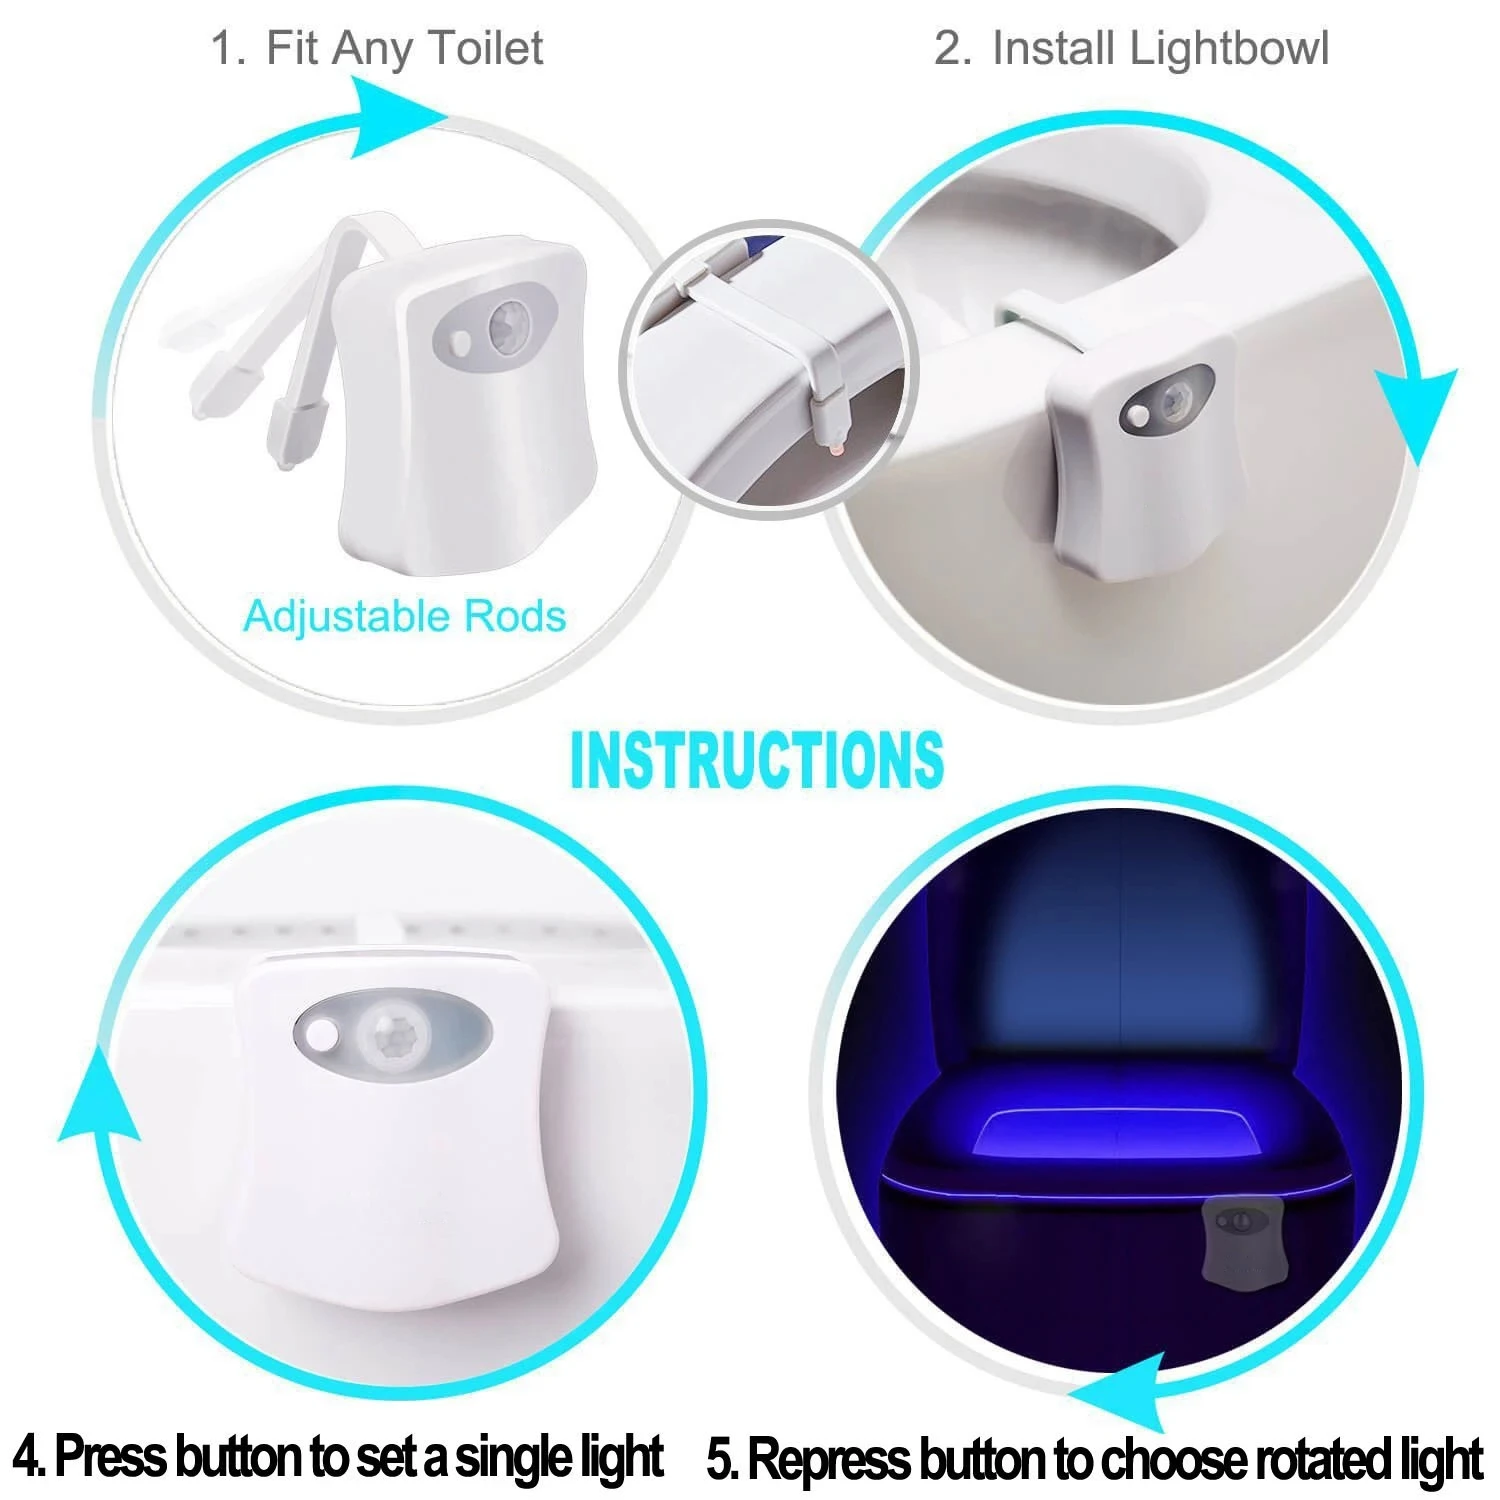 https://ae01.alicdn.com/kf/S2cd6d6f9d3474720a48e0d00ab305a8bG/8-Colors-Smart-PIR-Motion-Sensor-Toilet-Seat-Night-Light-Waterproof-Backlight-For-Toilet-Bowl-LED.jpg